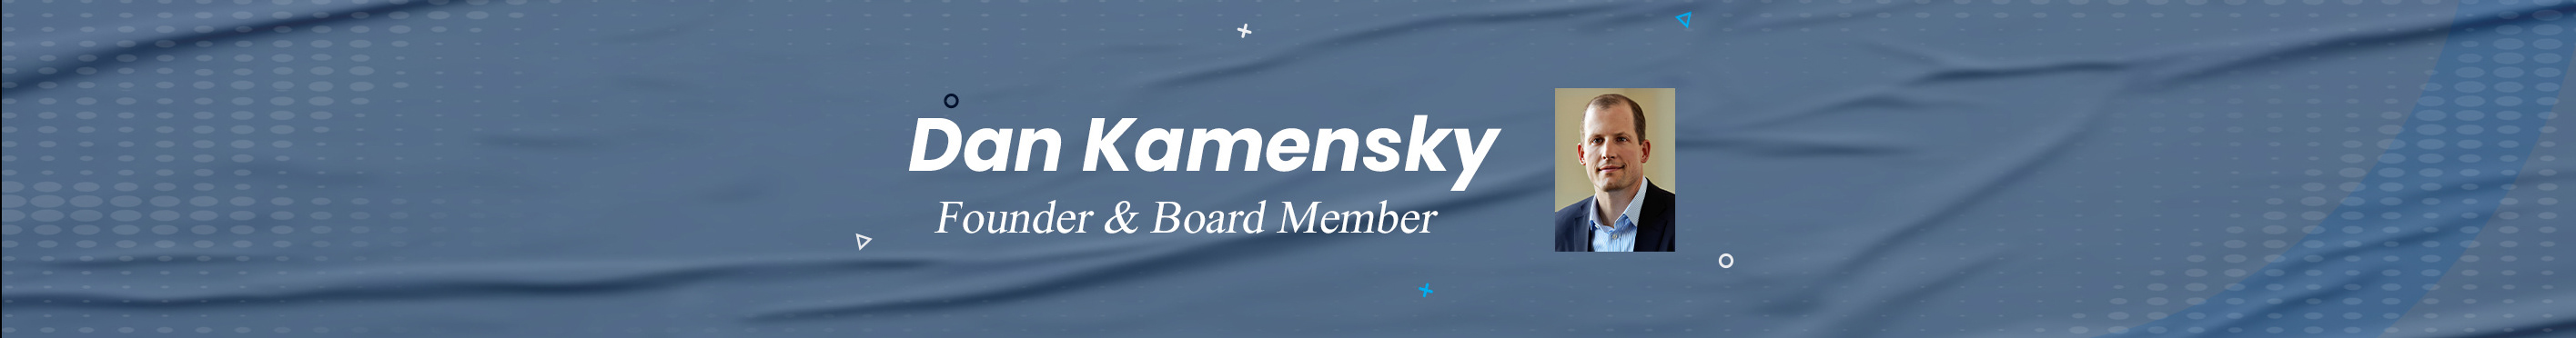 Dan Kamensky's profile banner